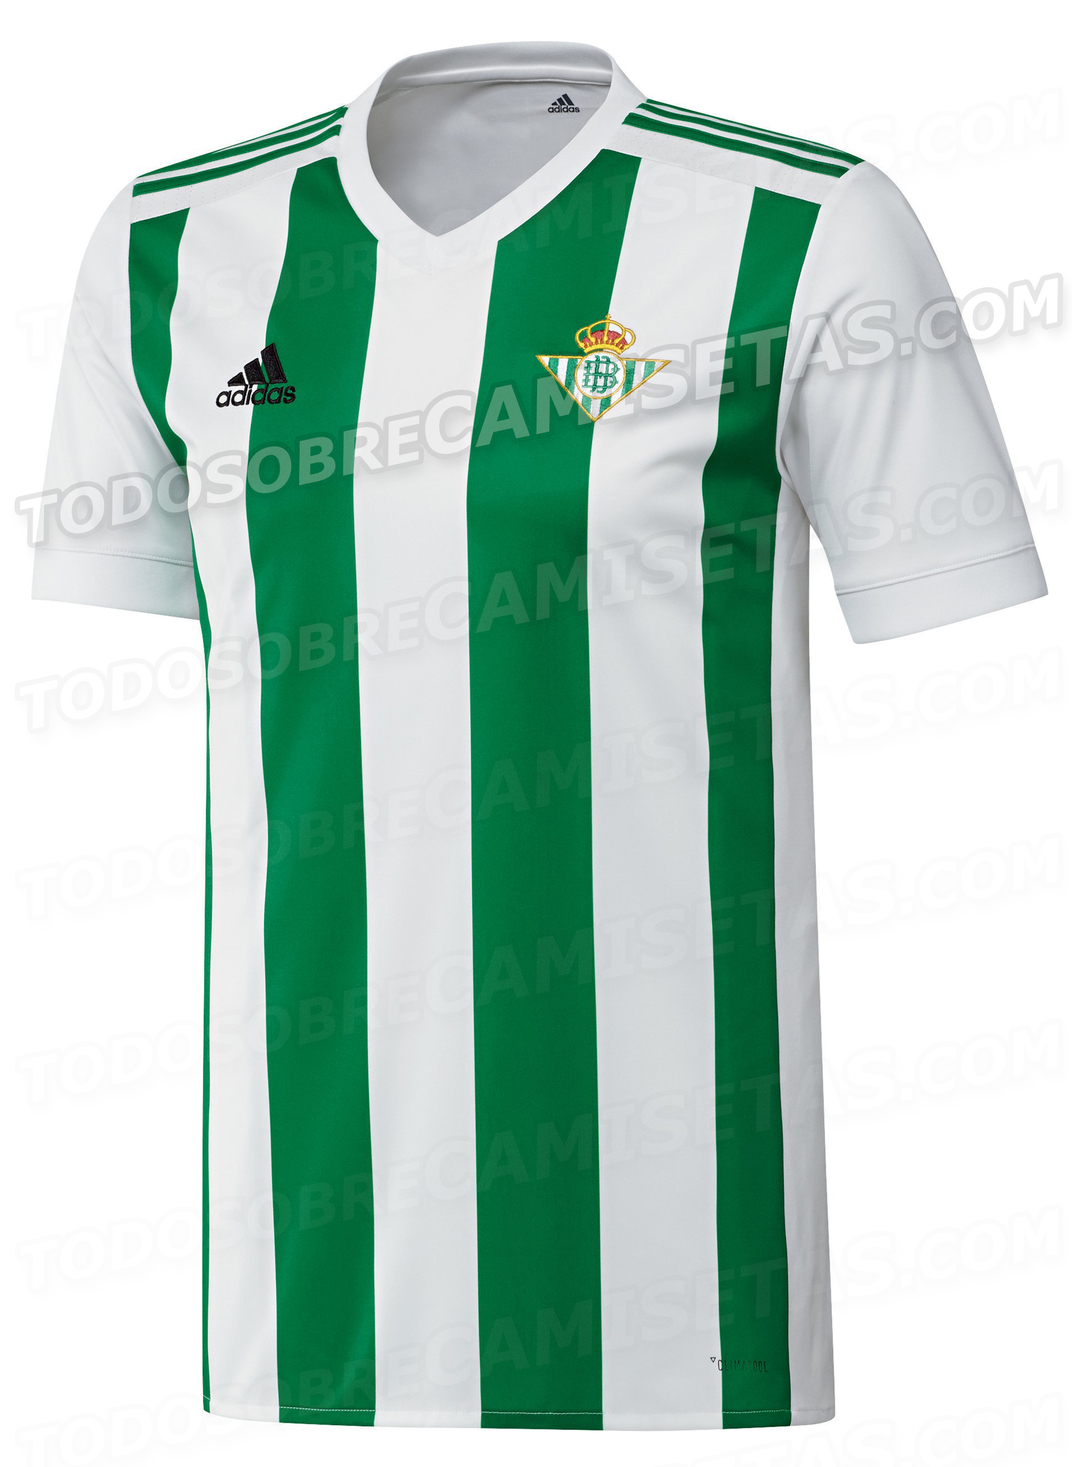 Camiseta local adidas del Real Betis 2017-18